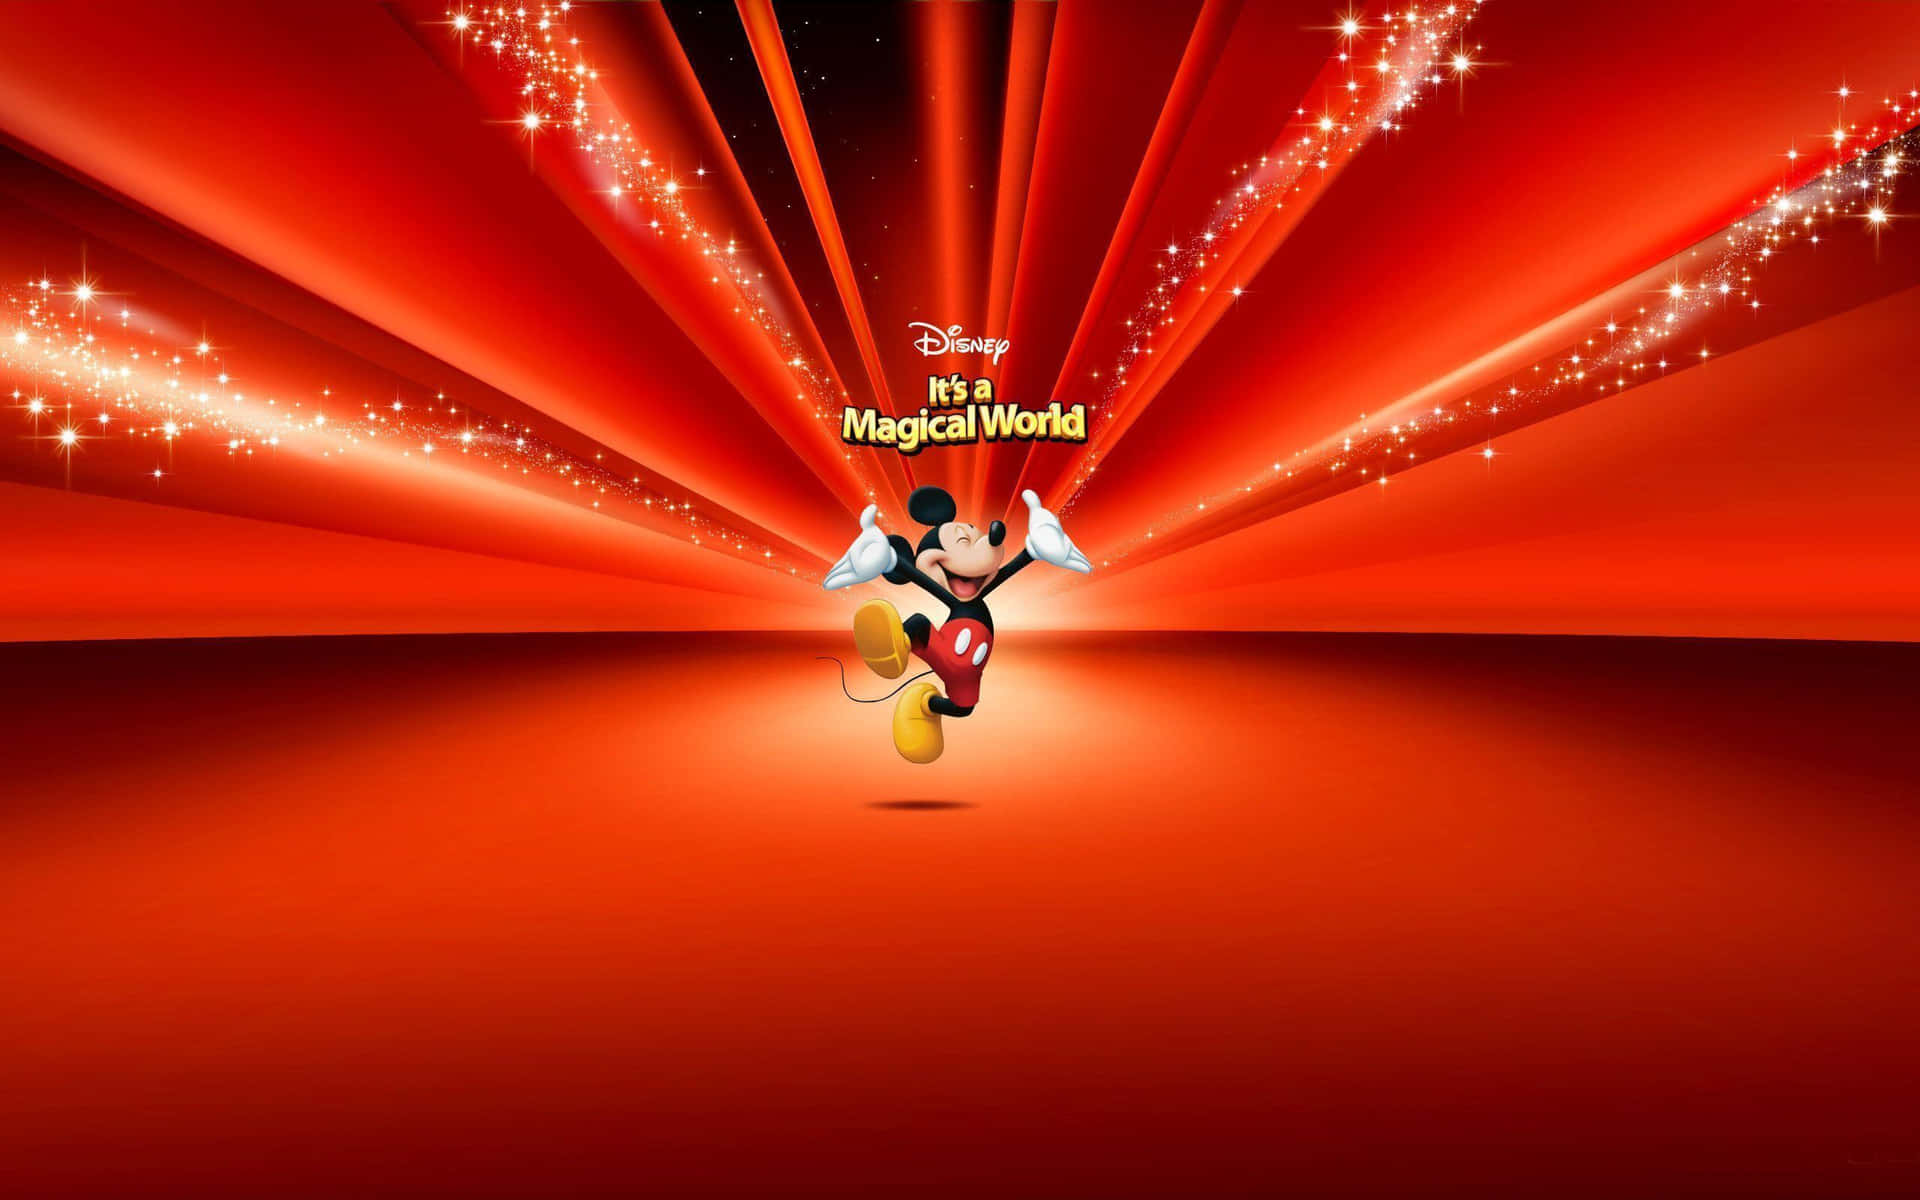 Mejorfondo De Pantalla De Disney: Mickey Mouse En Un Mundo Mágico.